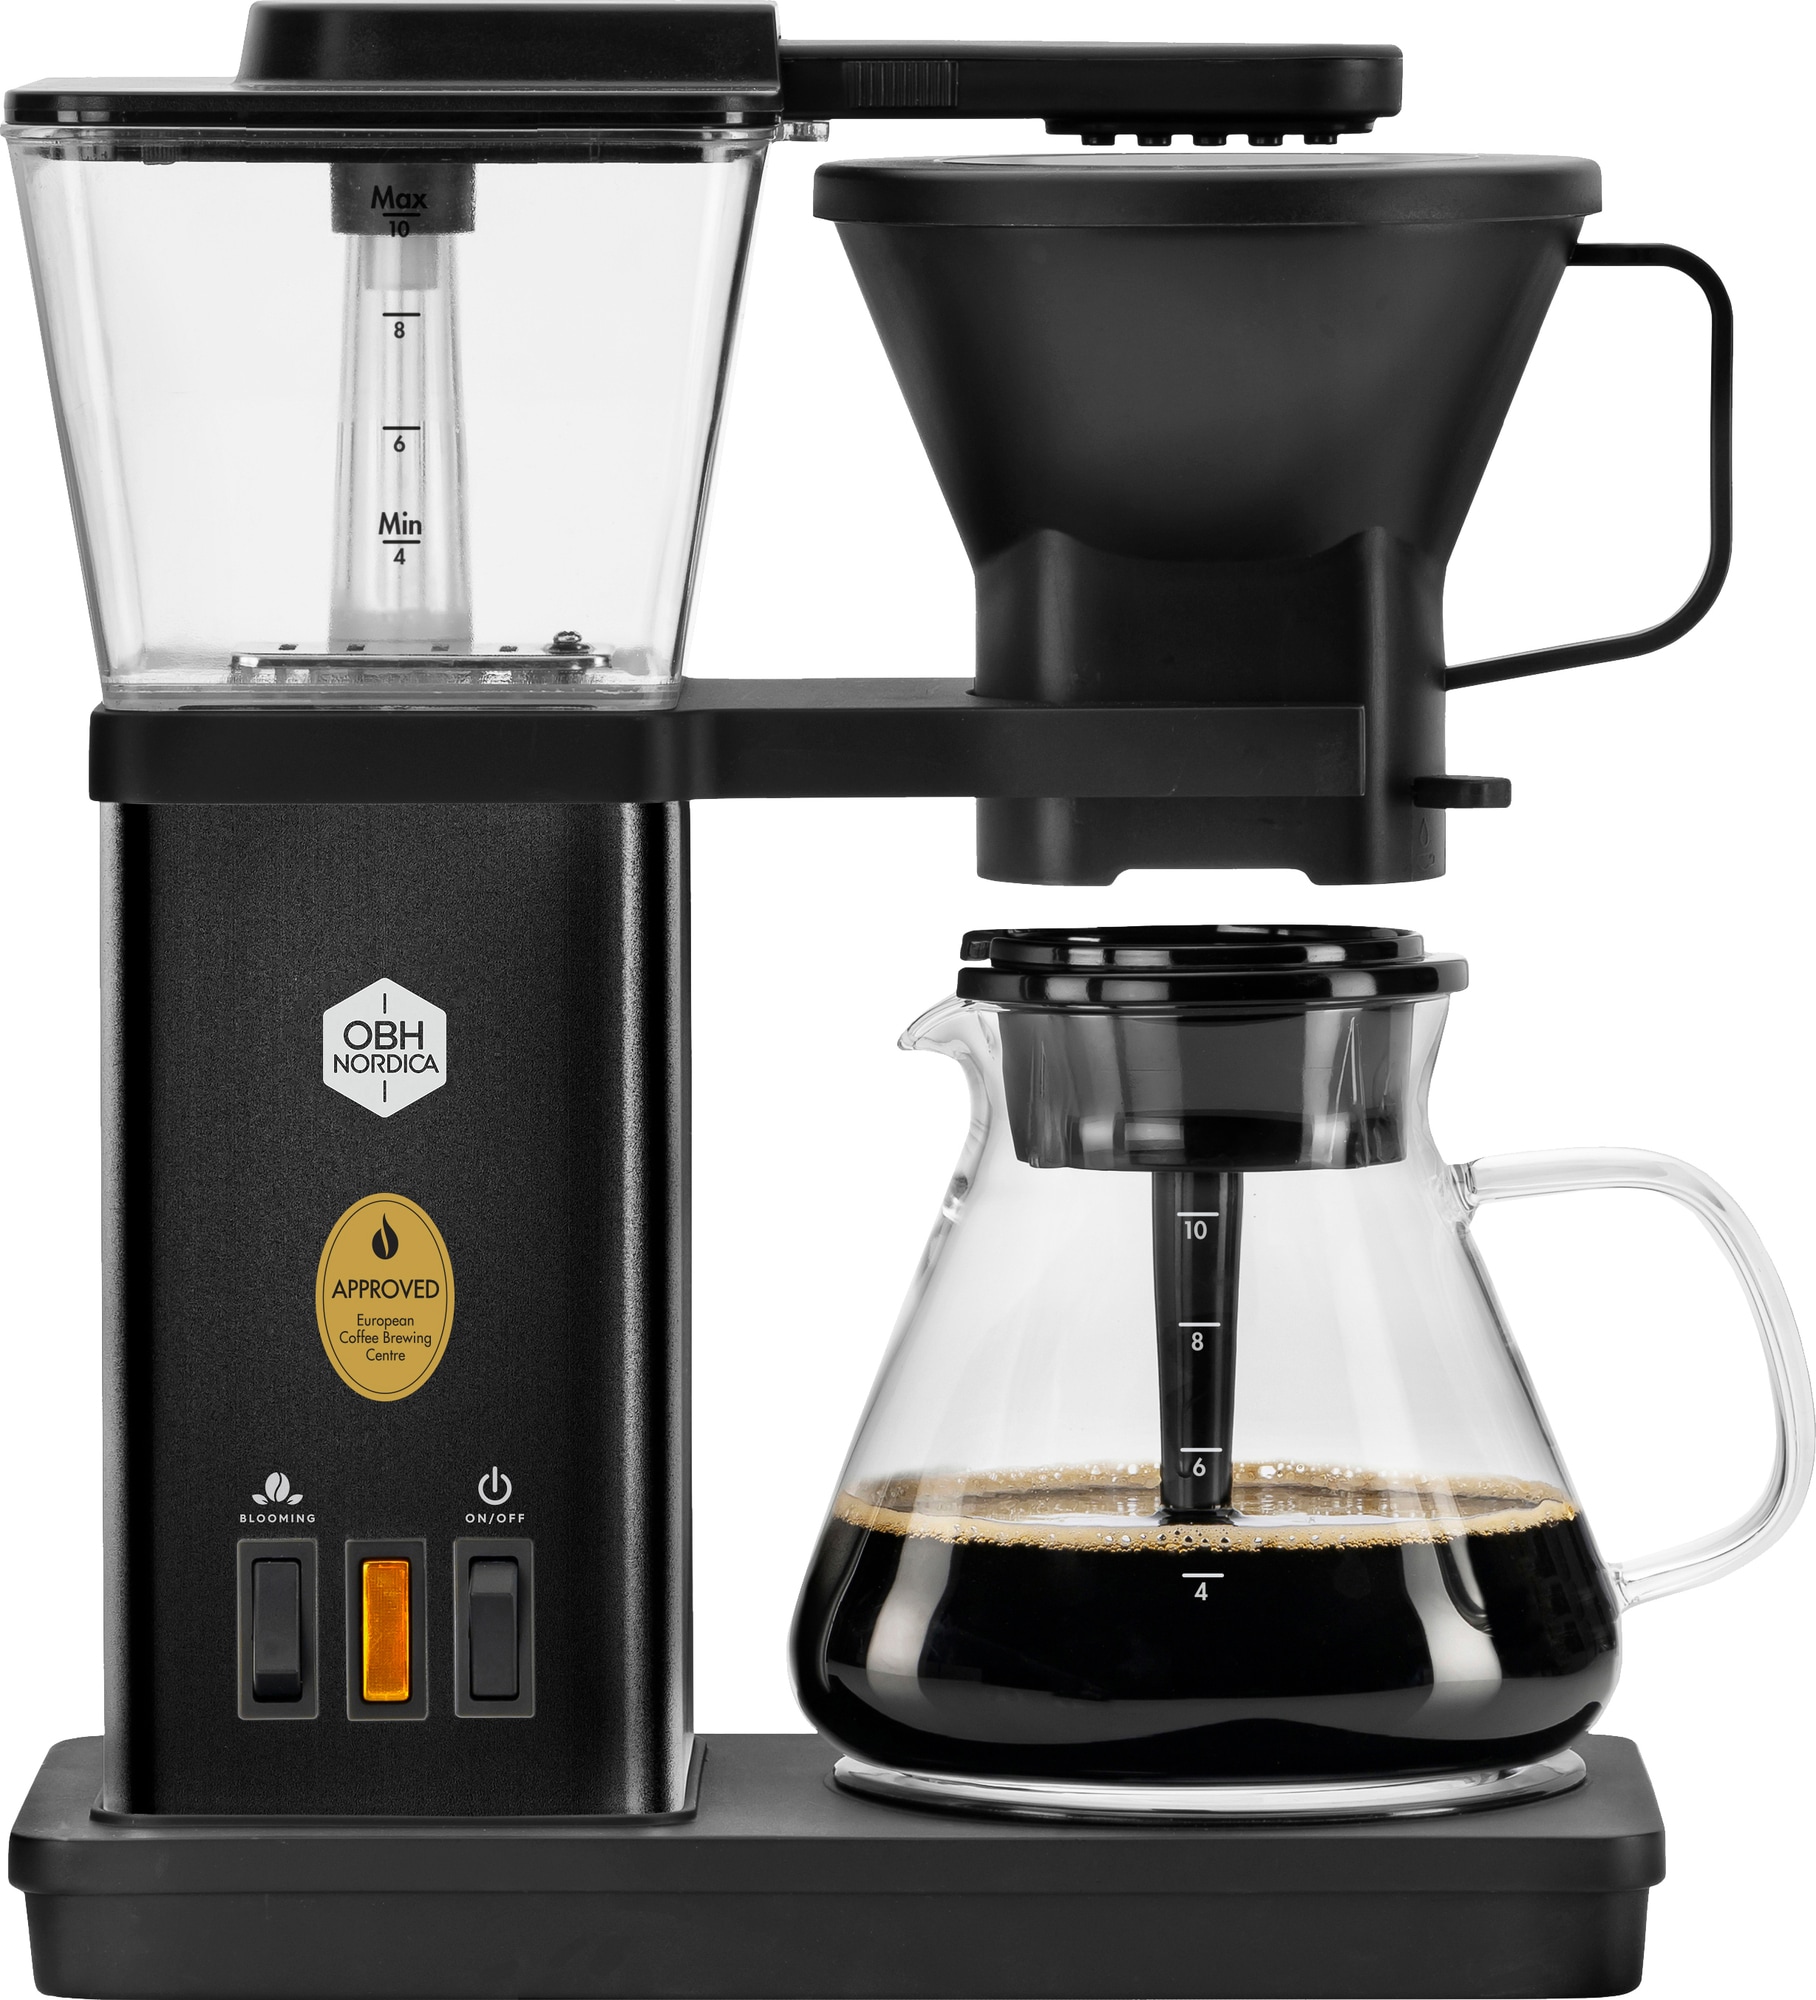 OBH Nordica Blooming kaffemaskine 3000000992 (sort)